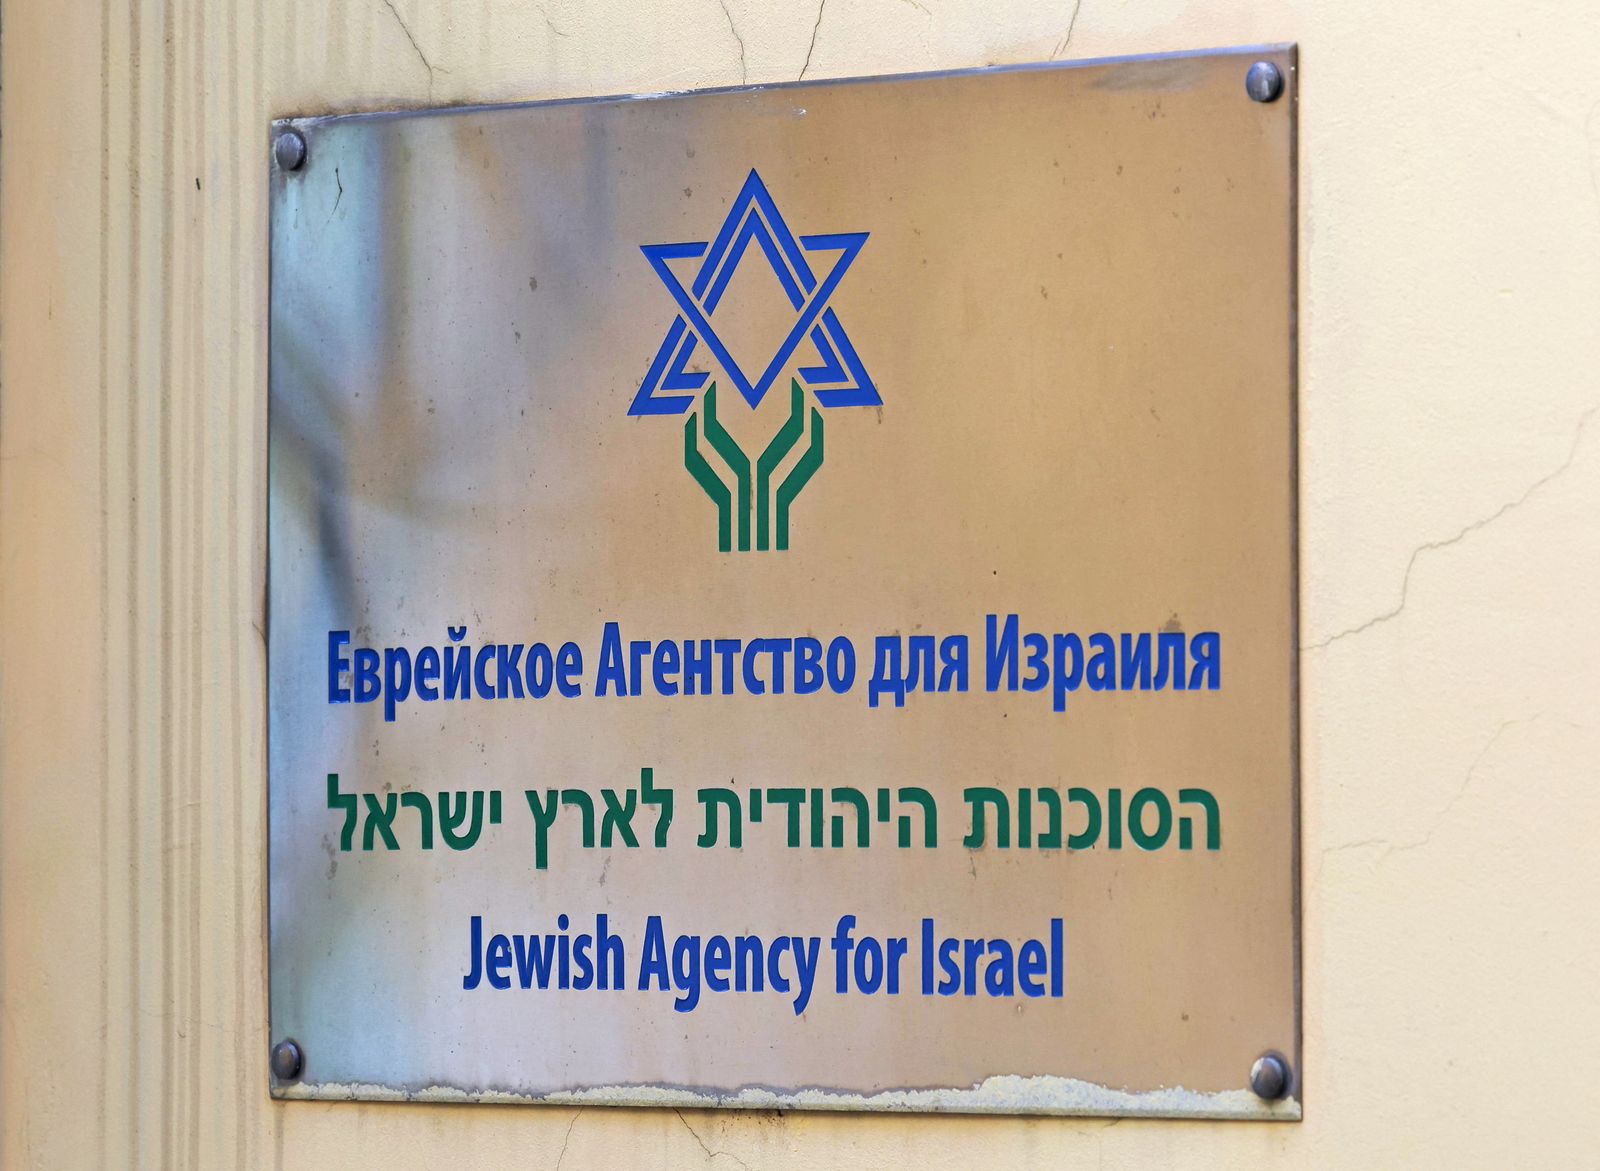 لافتة تشير إلى مقر الوكالة اليهودية في العاصمة الروسية موسكو- 21 يوليو 2022 - REUTERS